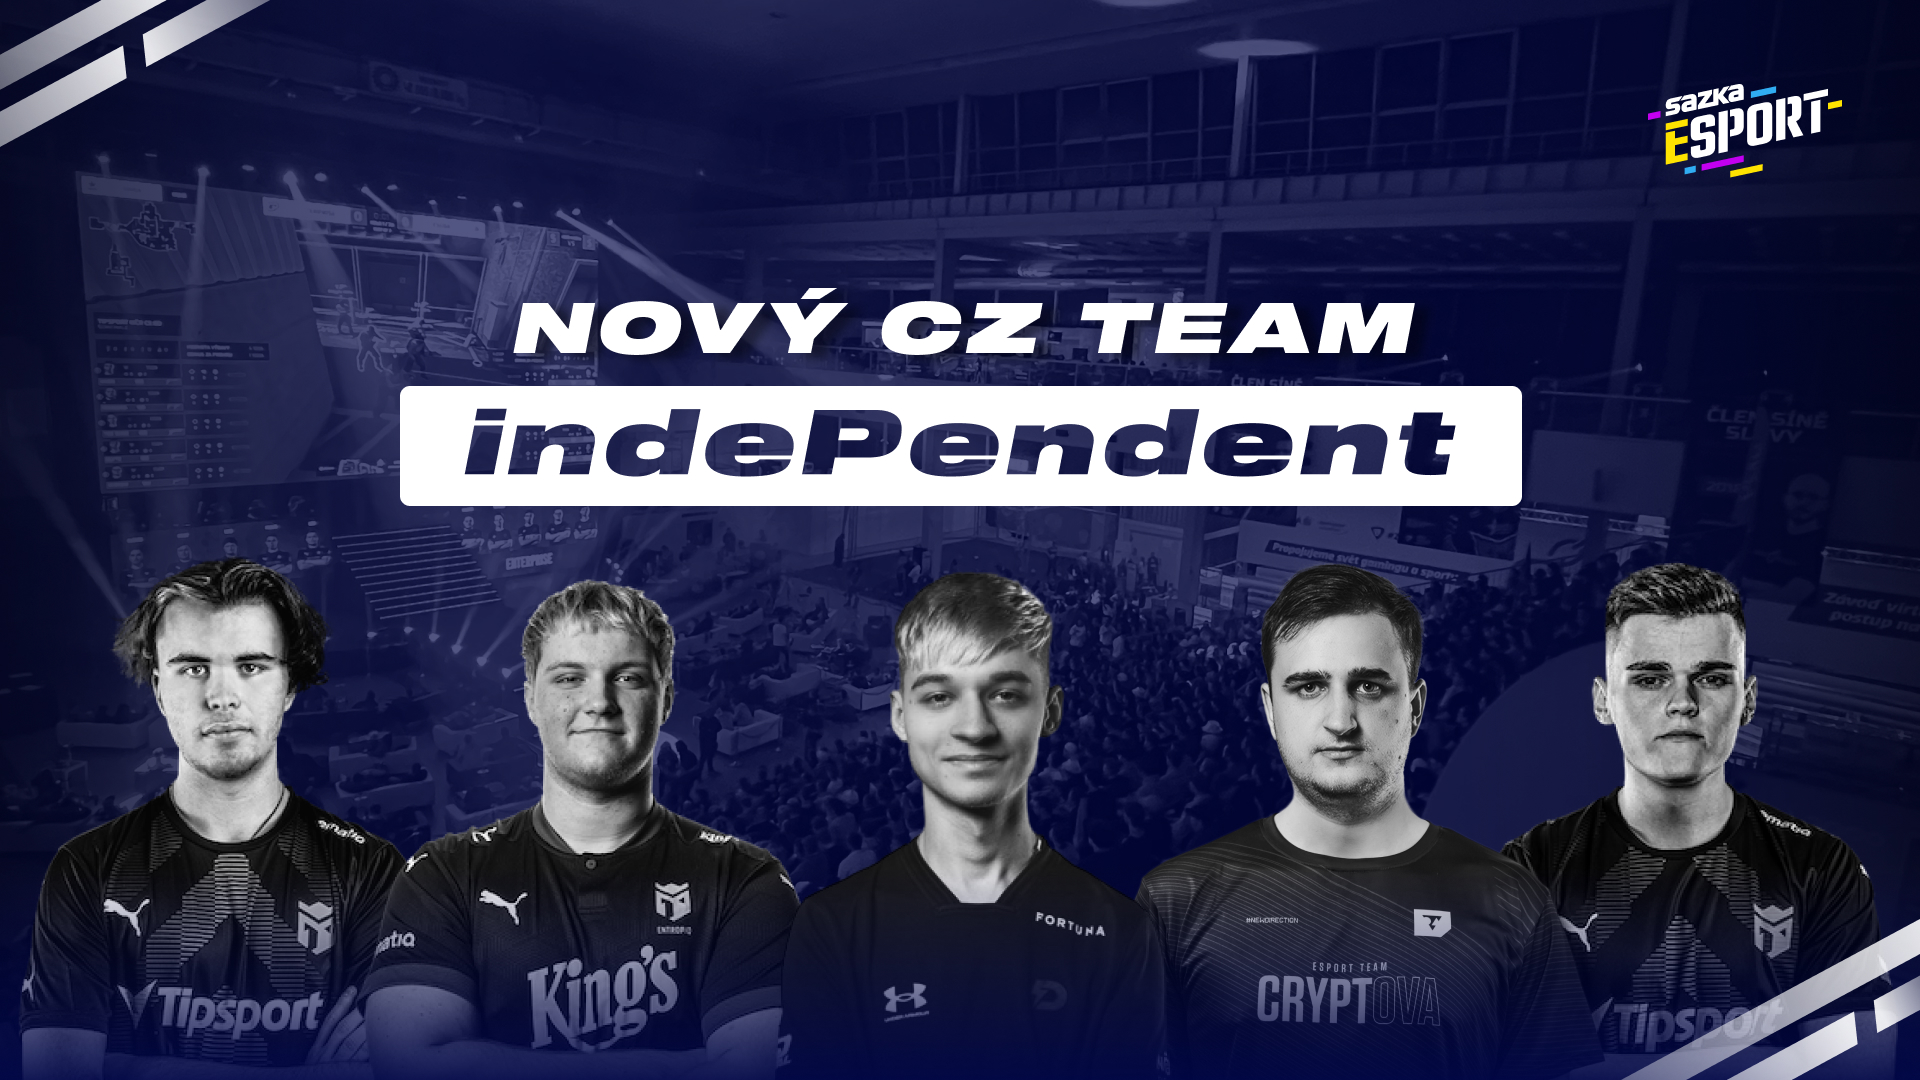 Hvězdy vítězné sestavy Entropiqu skládají nový tým, budou hrát pod názvem indePendent